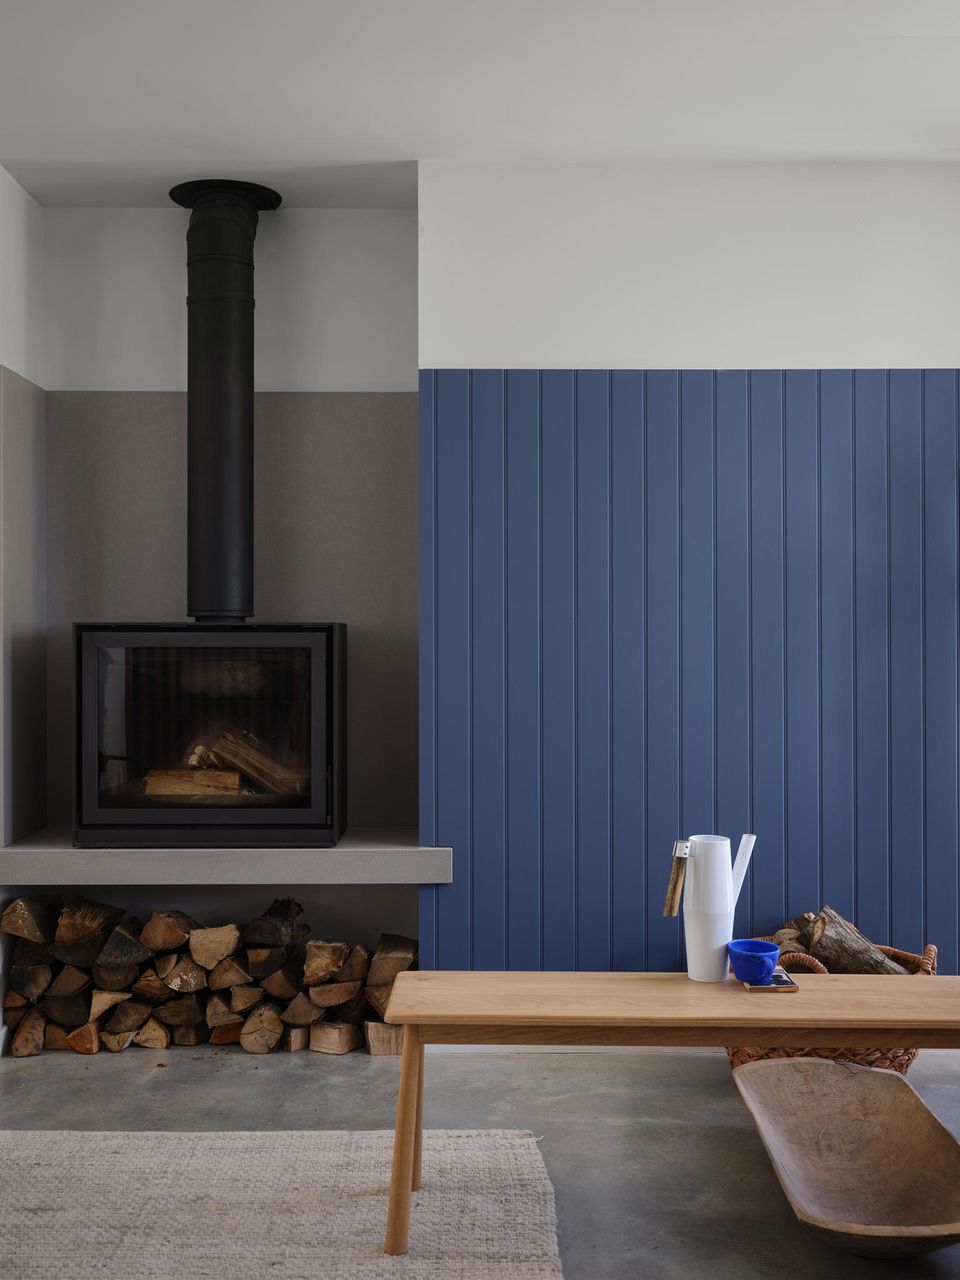 Blaue Wandvertäfelung mit breitem weißen Rand und schwarzem Ofen, rechts eine Holzbank mit weißer Gießkanne